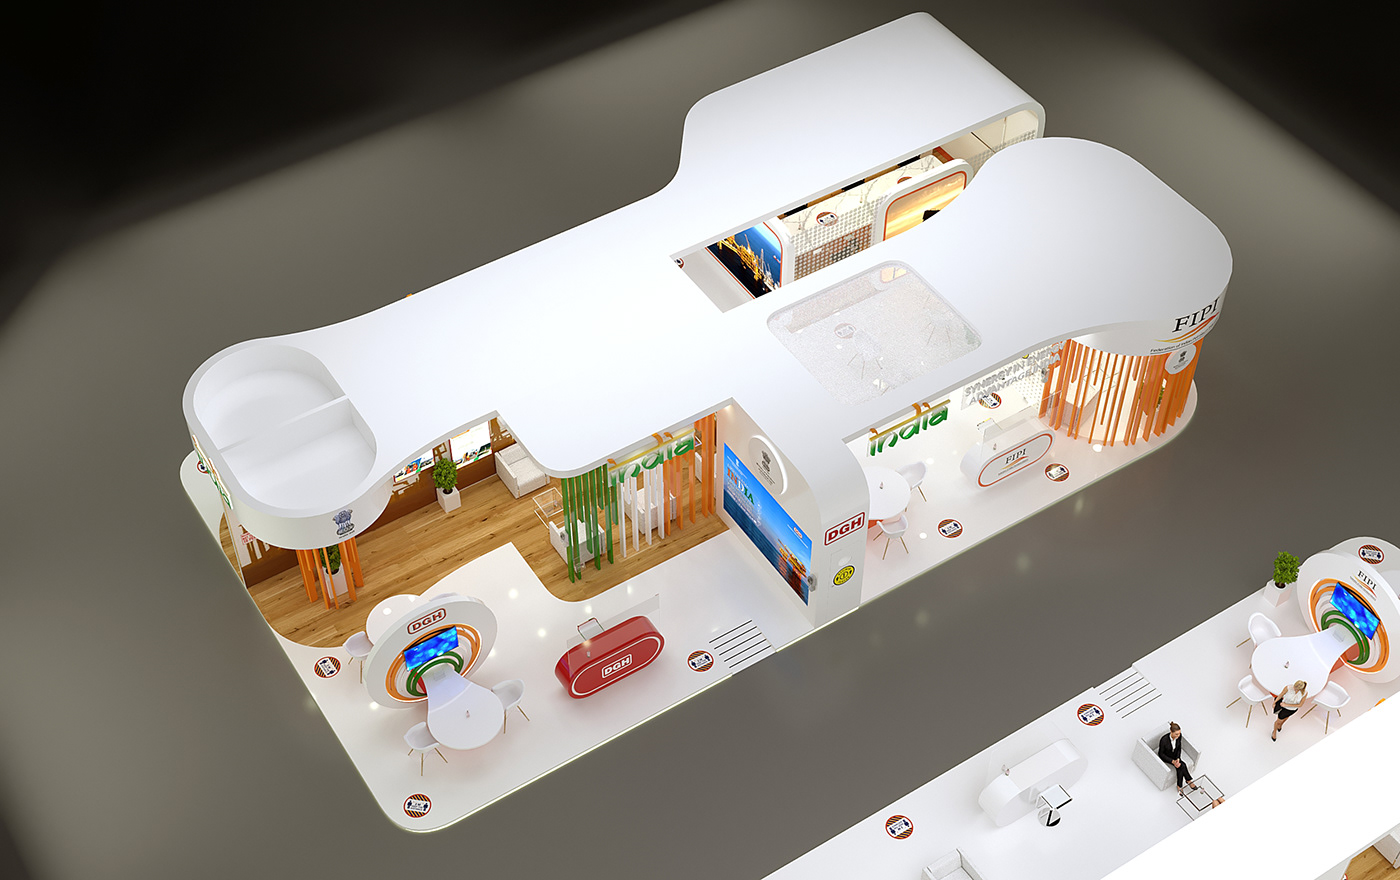 3D 3d art 3ds max ADIPEC architecture Exhibition  Exhibition Design  modeling pavilion Render